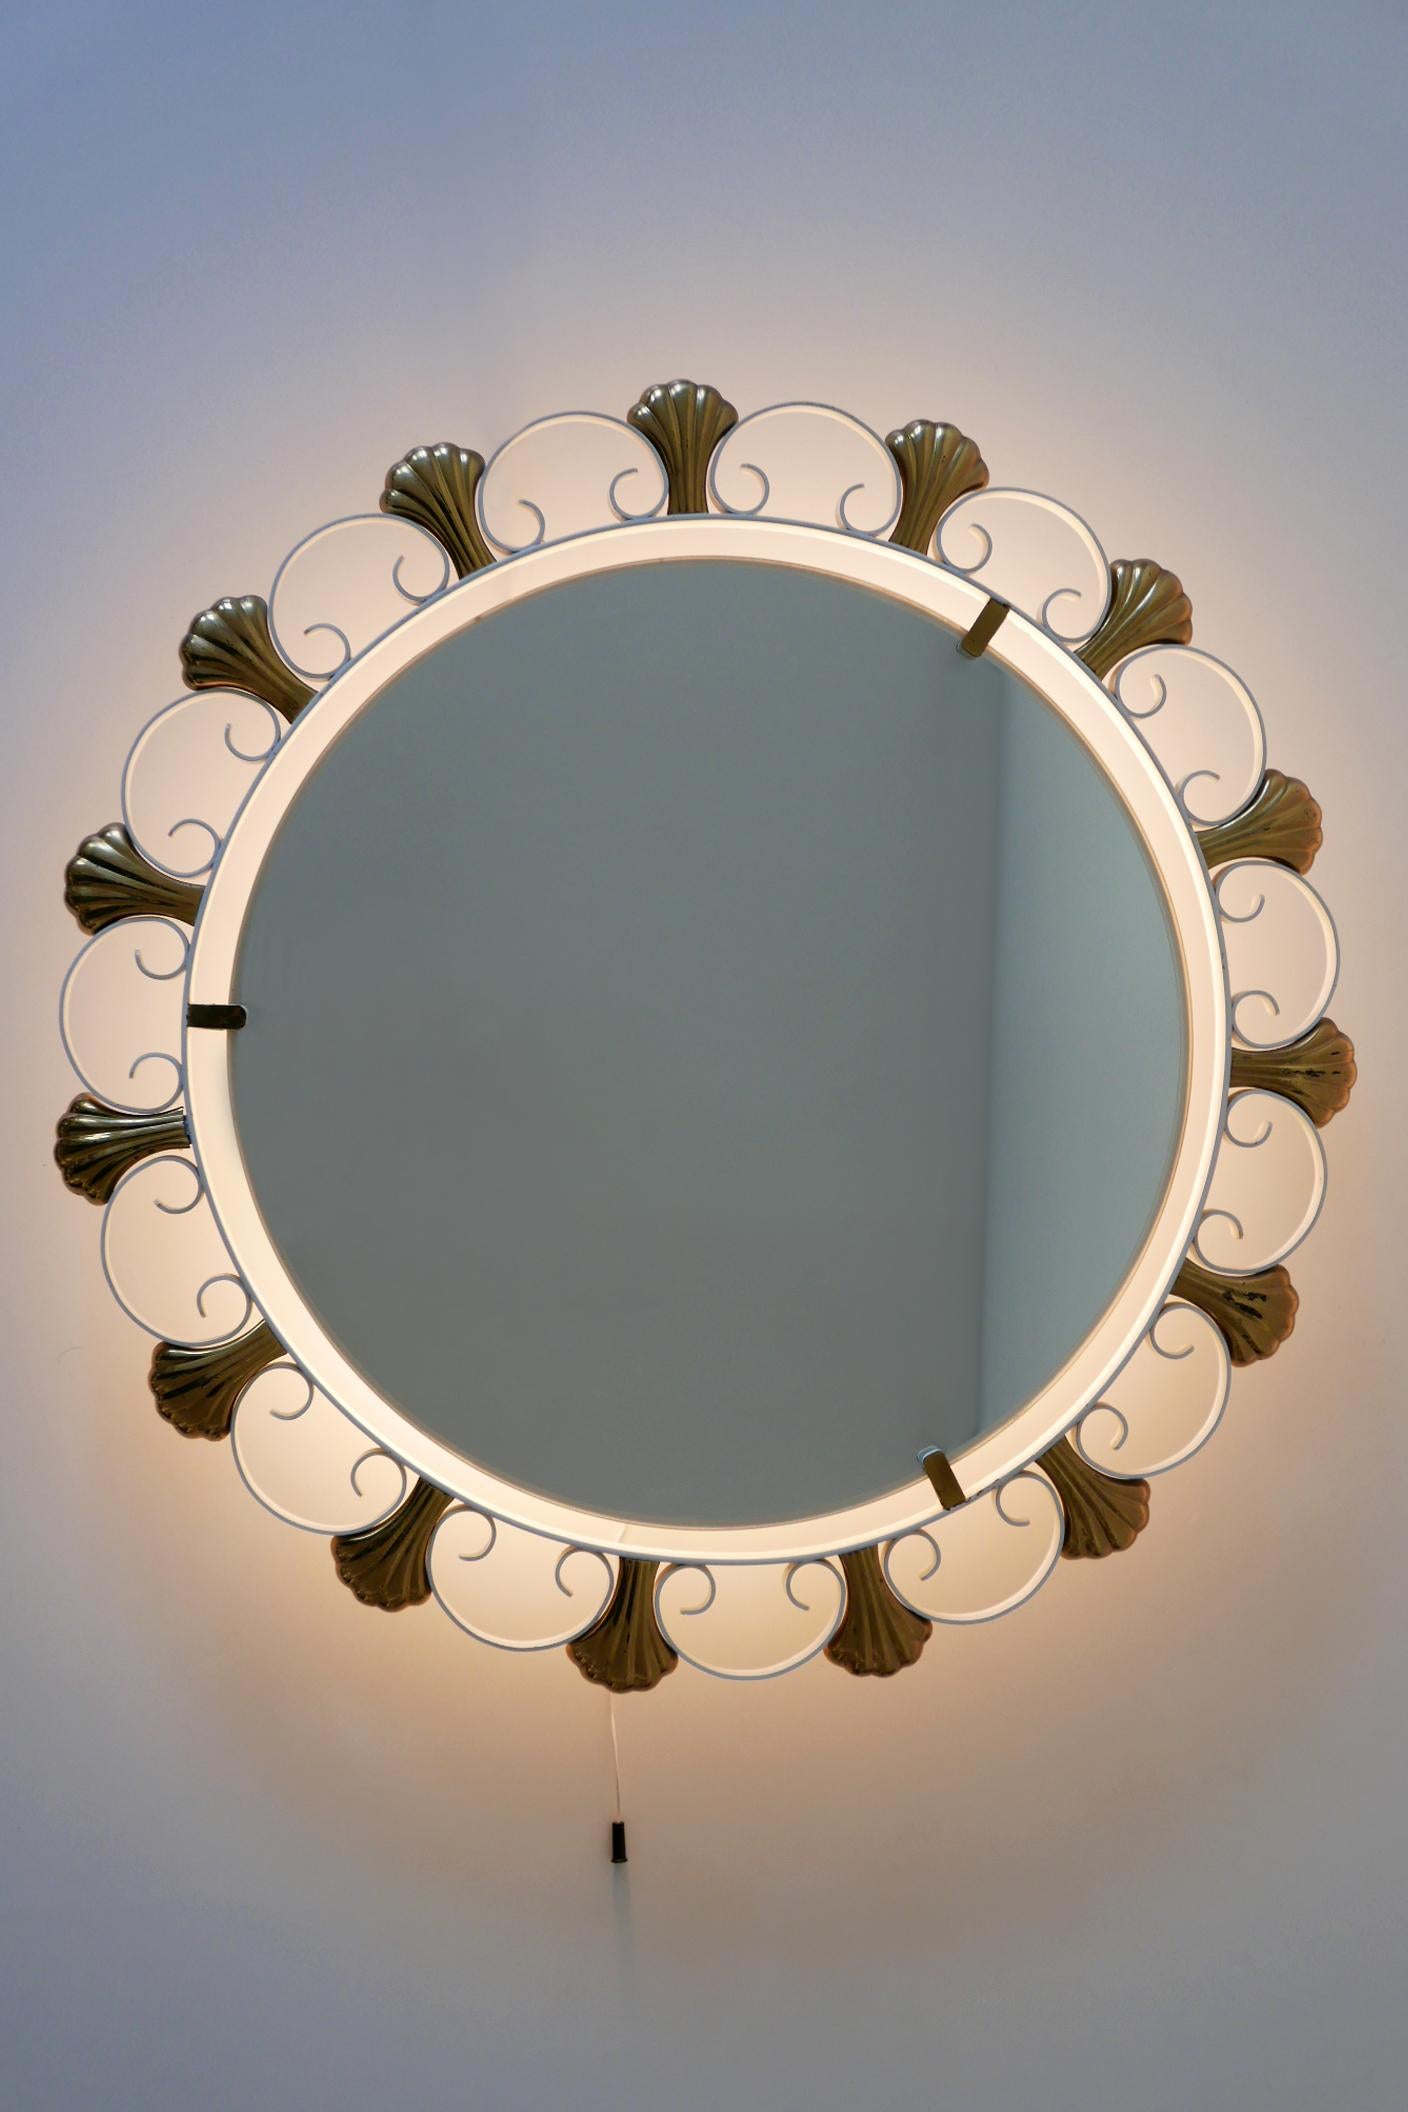 Eleganter Mid-Century Modern Wandspiegel mit Hintergrundbeleuchtung. Hergestellt von Hillebrand, 1950er Jahre, Deutschland. Herstellermarke auf dem Sockel.

Der aus weiß emailliertem Metall und Messing gefertigte Spiegel wird mit 4 x E14 / E12